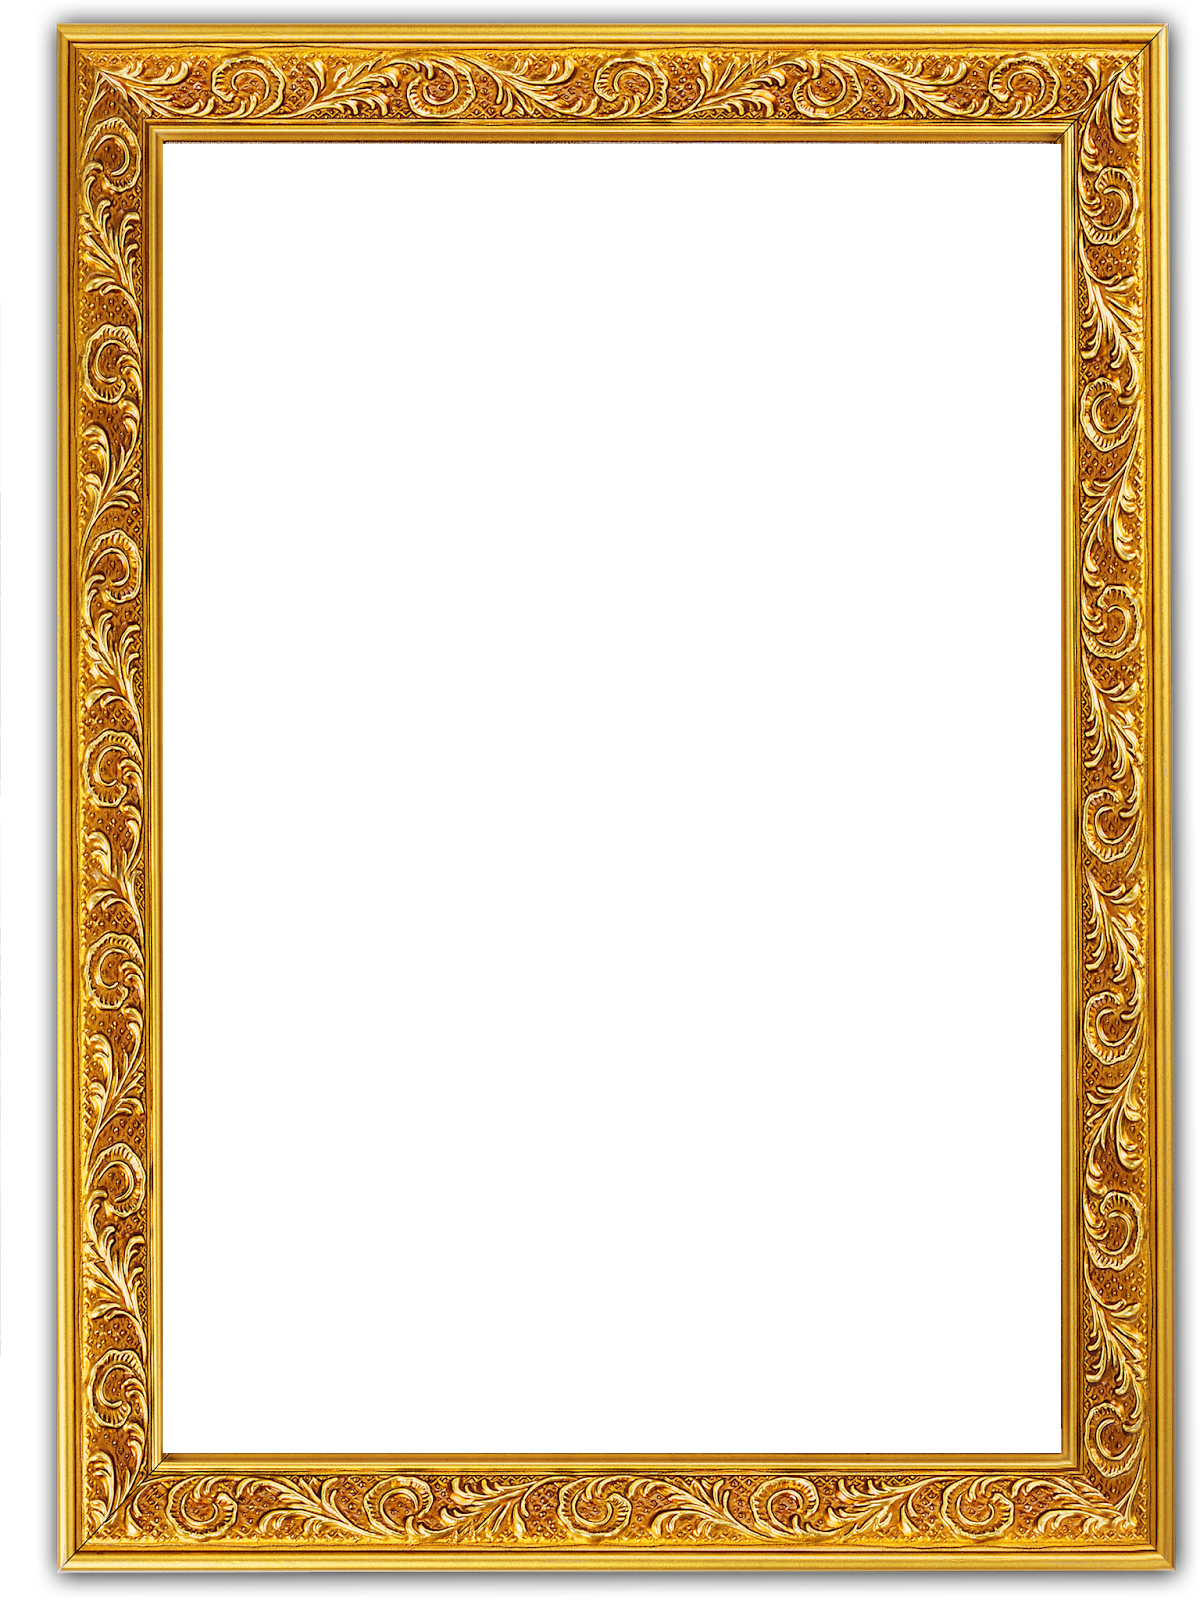 Golden photo frame png image transparent